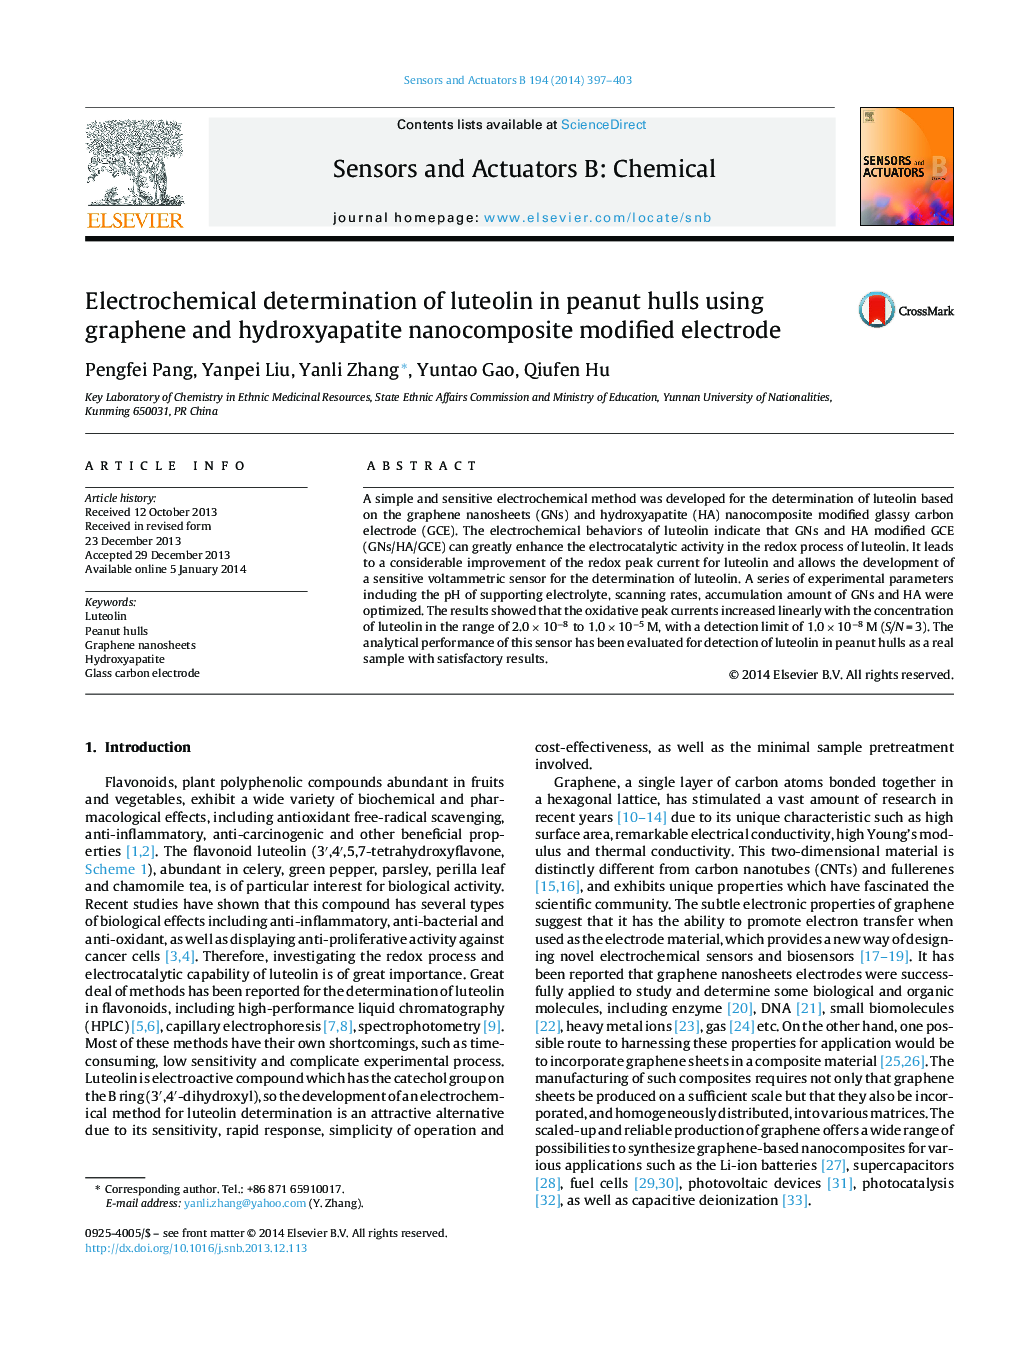 تعیین الکتروشیمیایی لوتئولین در بدنه بادام با استفاده از الکترودهای اصلاح شده نانو کامپوزیت گرافن و هیدروکسی آپاتیت 